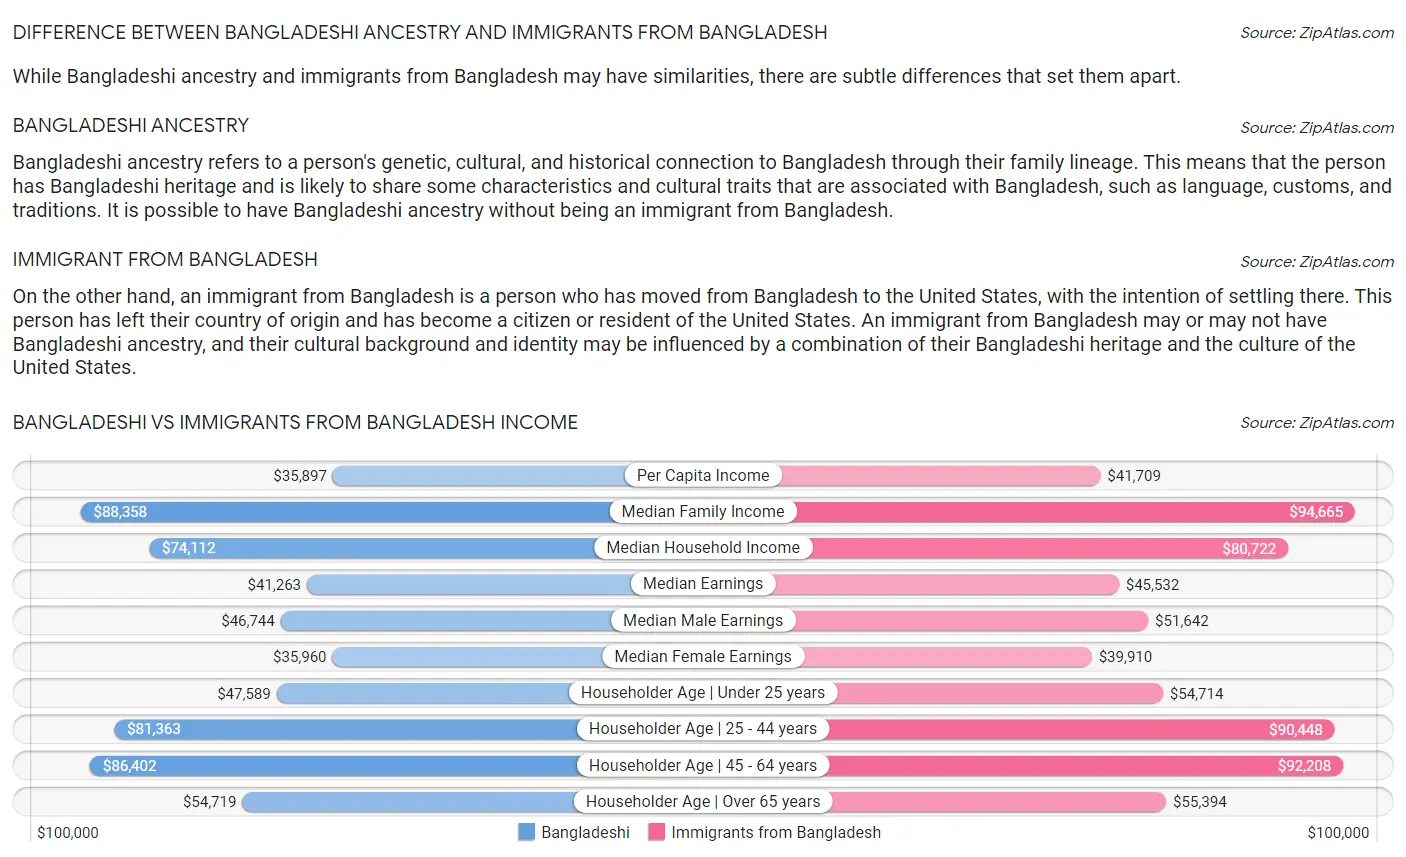 Bangladeshi vs Immigrants from Bangladesh Income